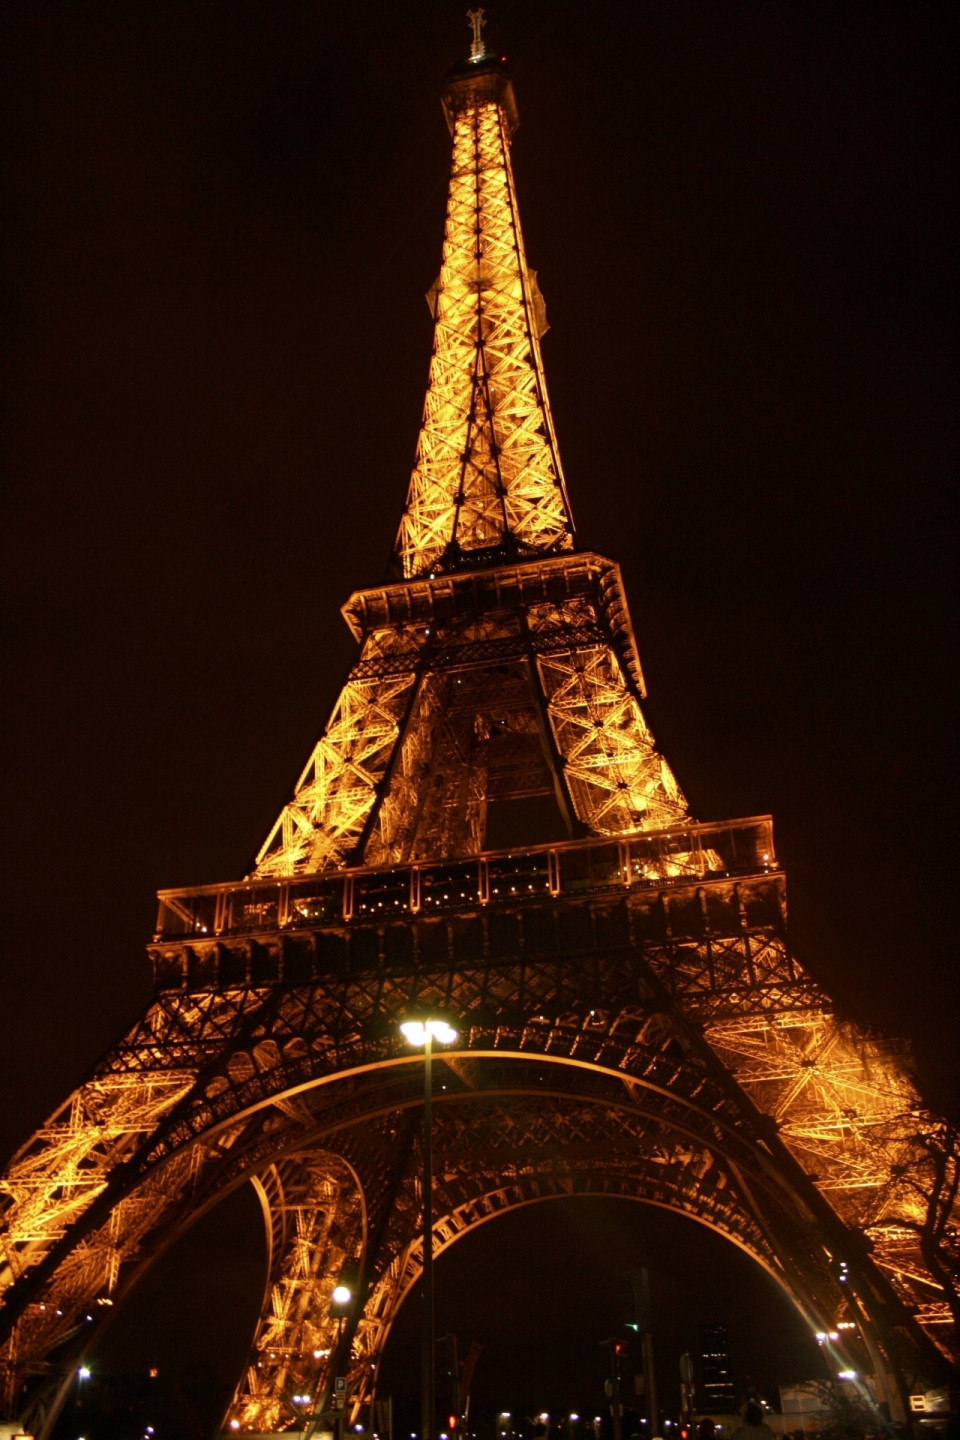 夜色下灯火通明的的壮美埃菲尔铁塔